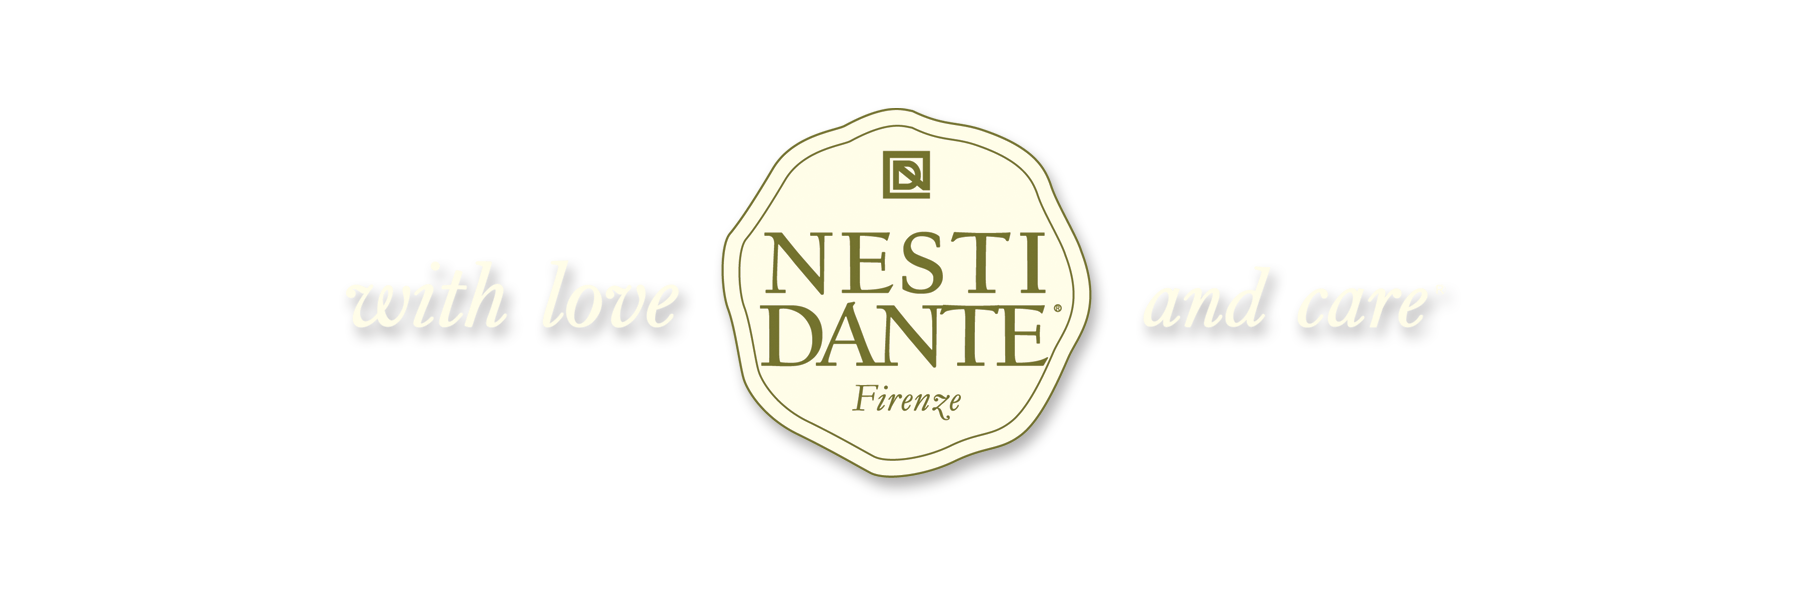 Nesti Dante, ein renommierter Hersteller aus...